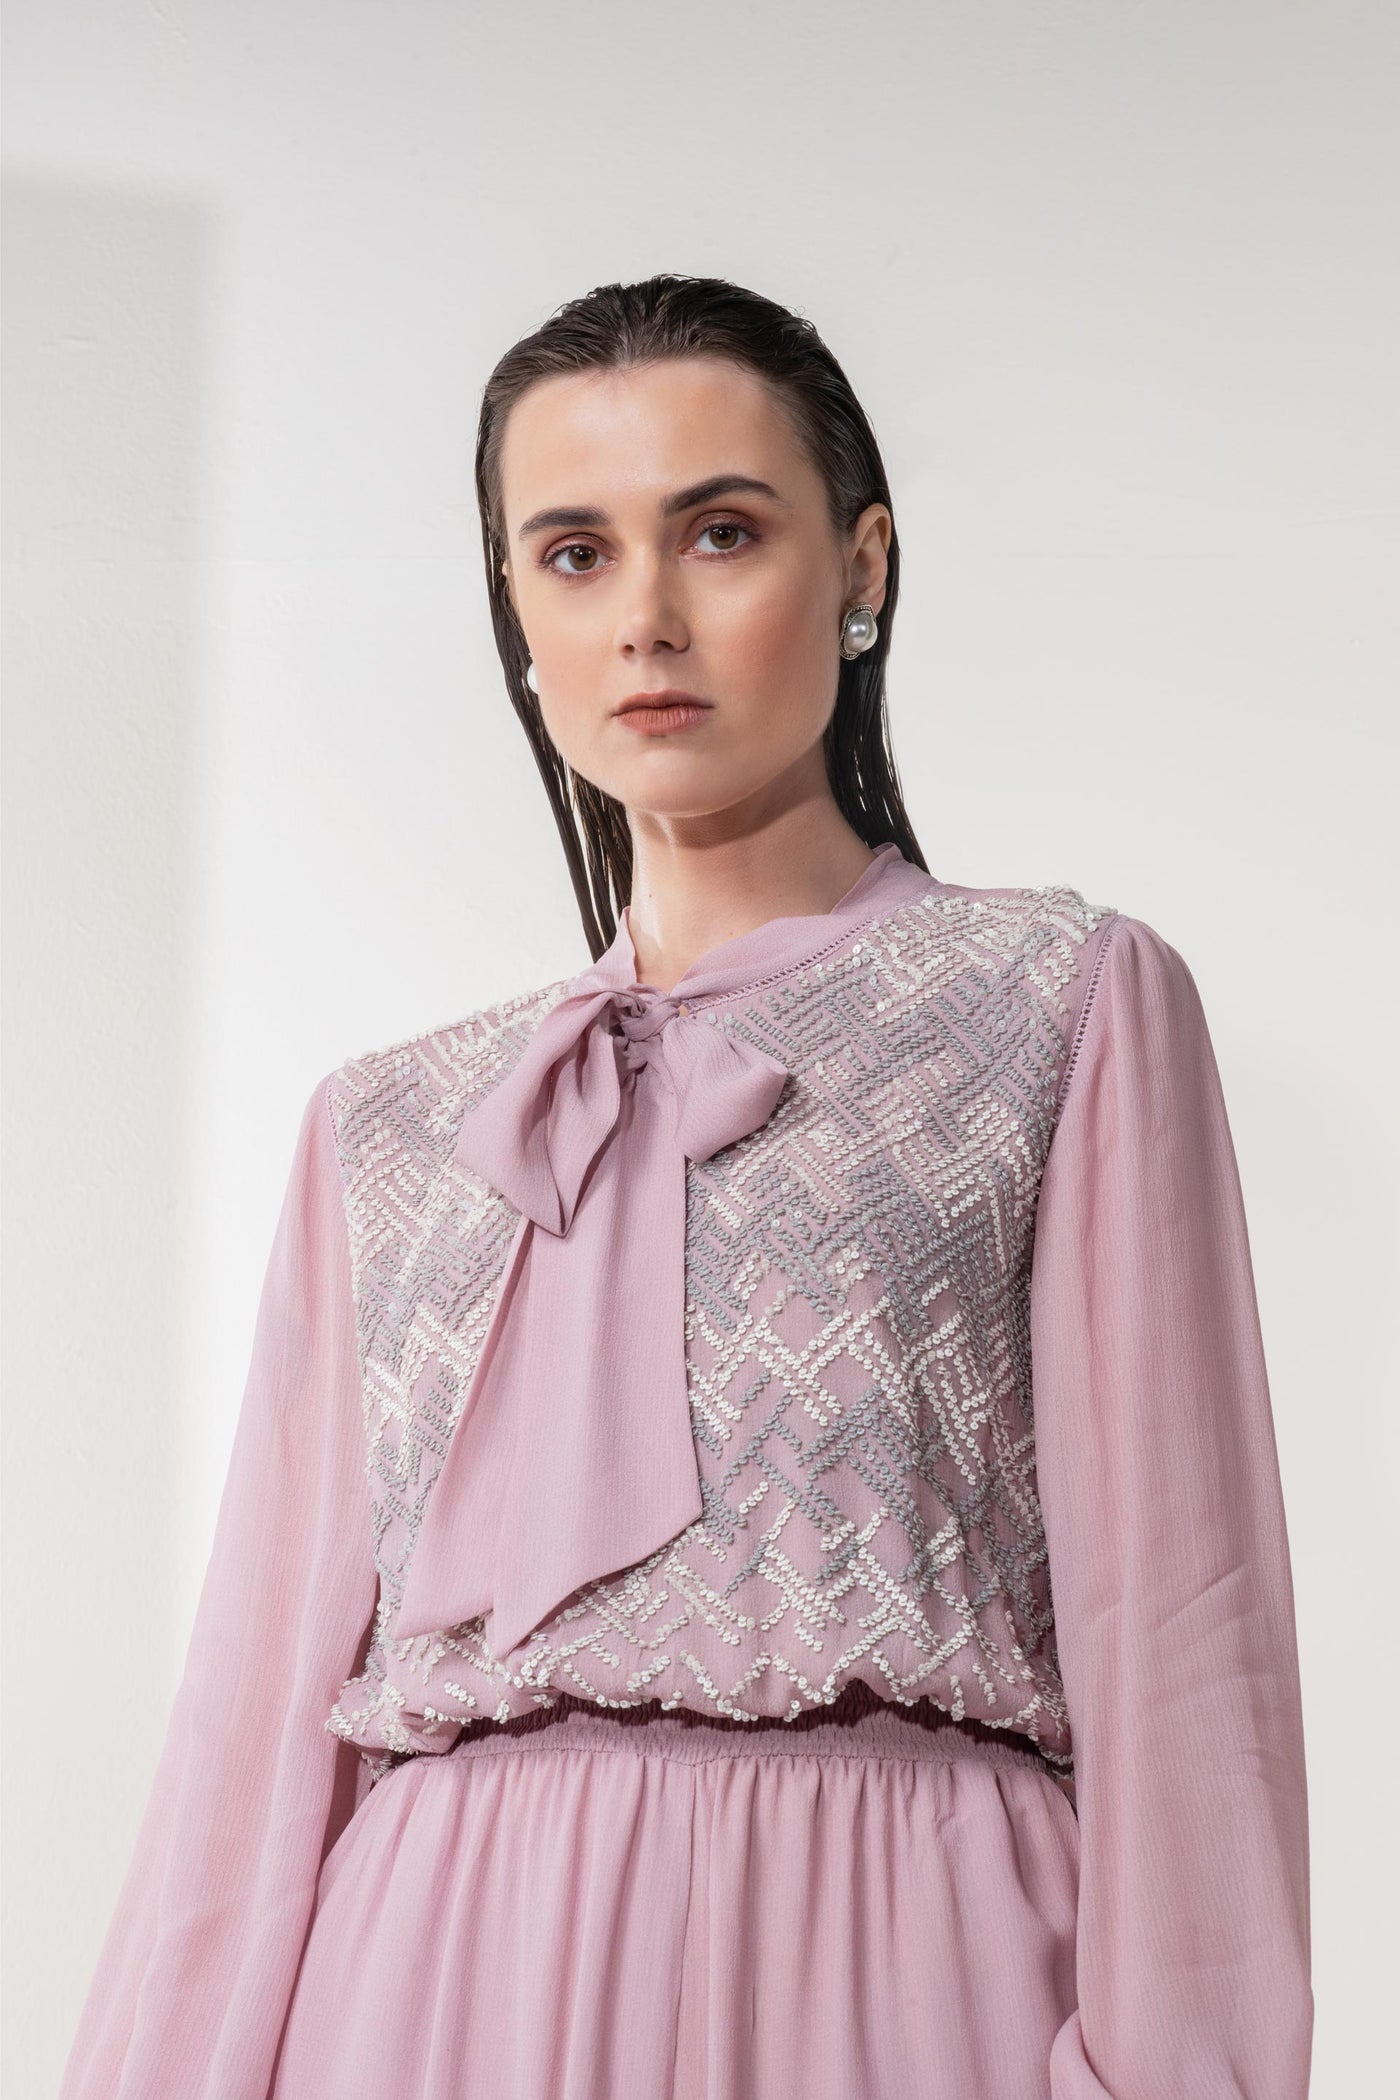 Namrata Joshipura Metallic Weave Smock Jumpsuit lilac western indian designer wear online shopping melange singapore